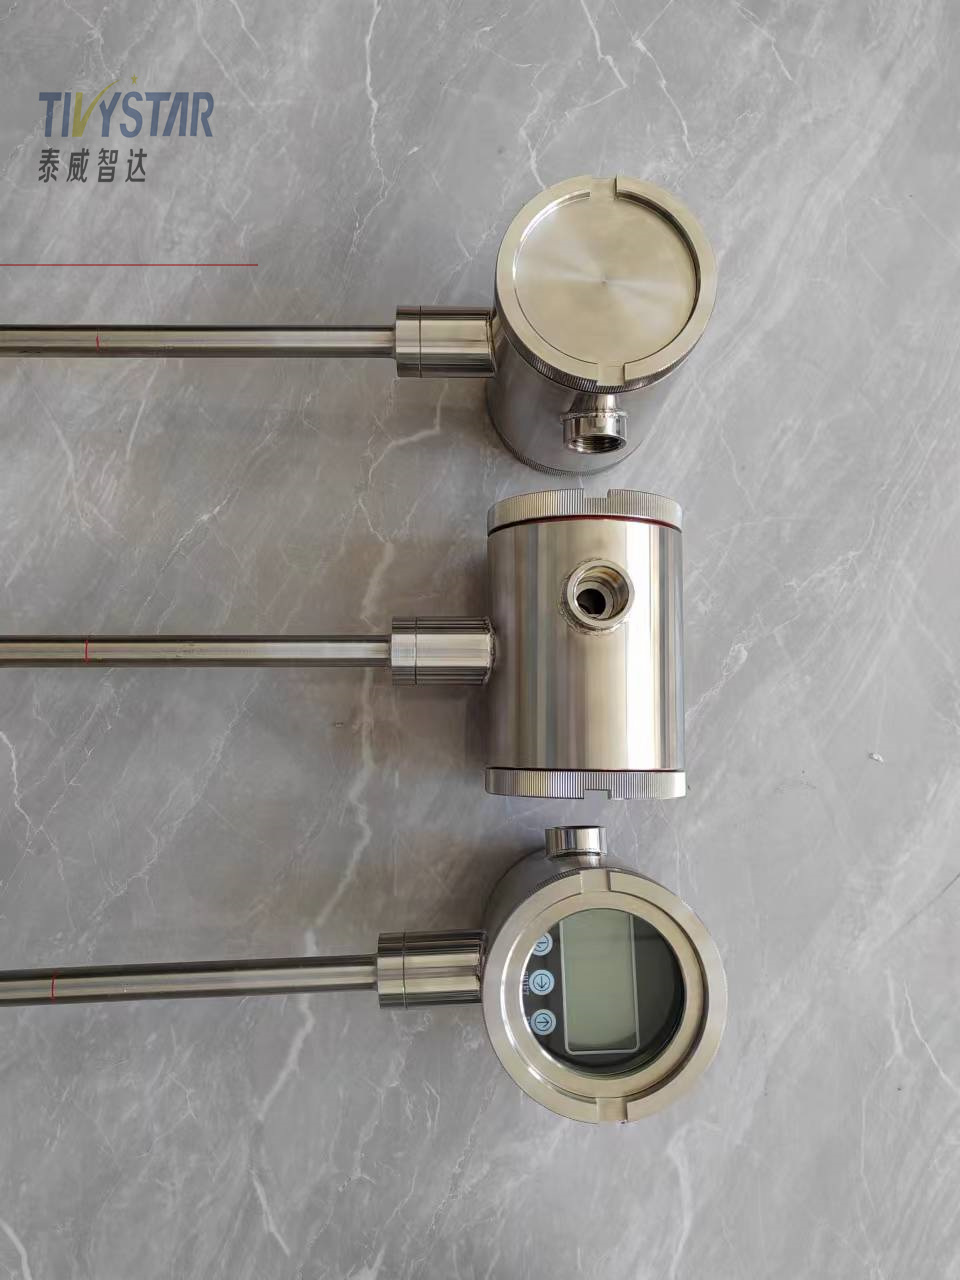 工业型磁致伸缩液位计厂家 不锈钢材质 安装简单